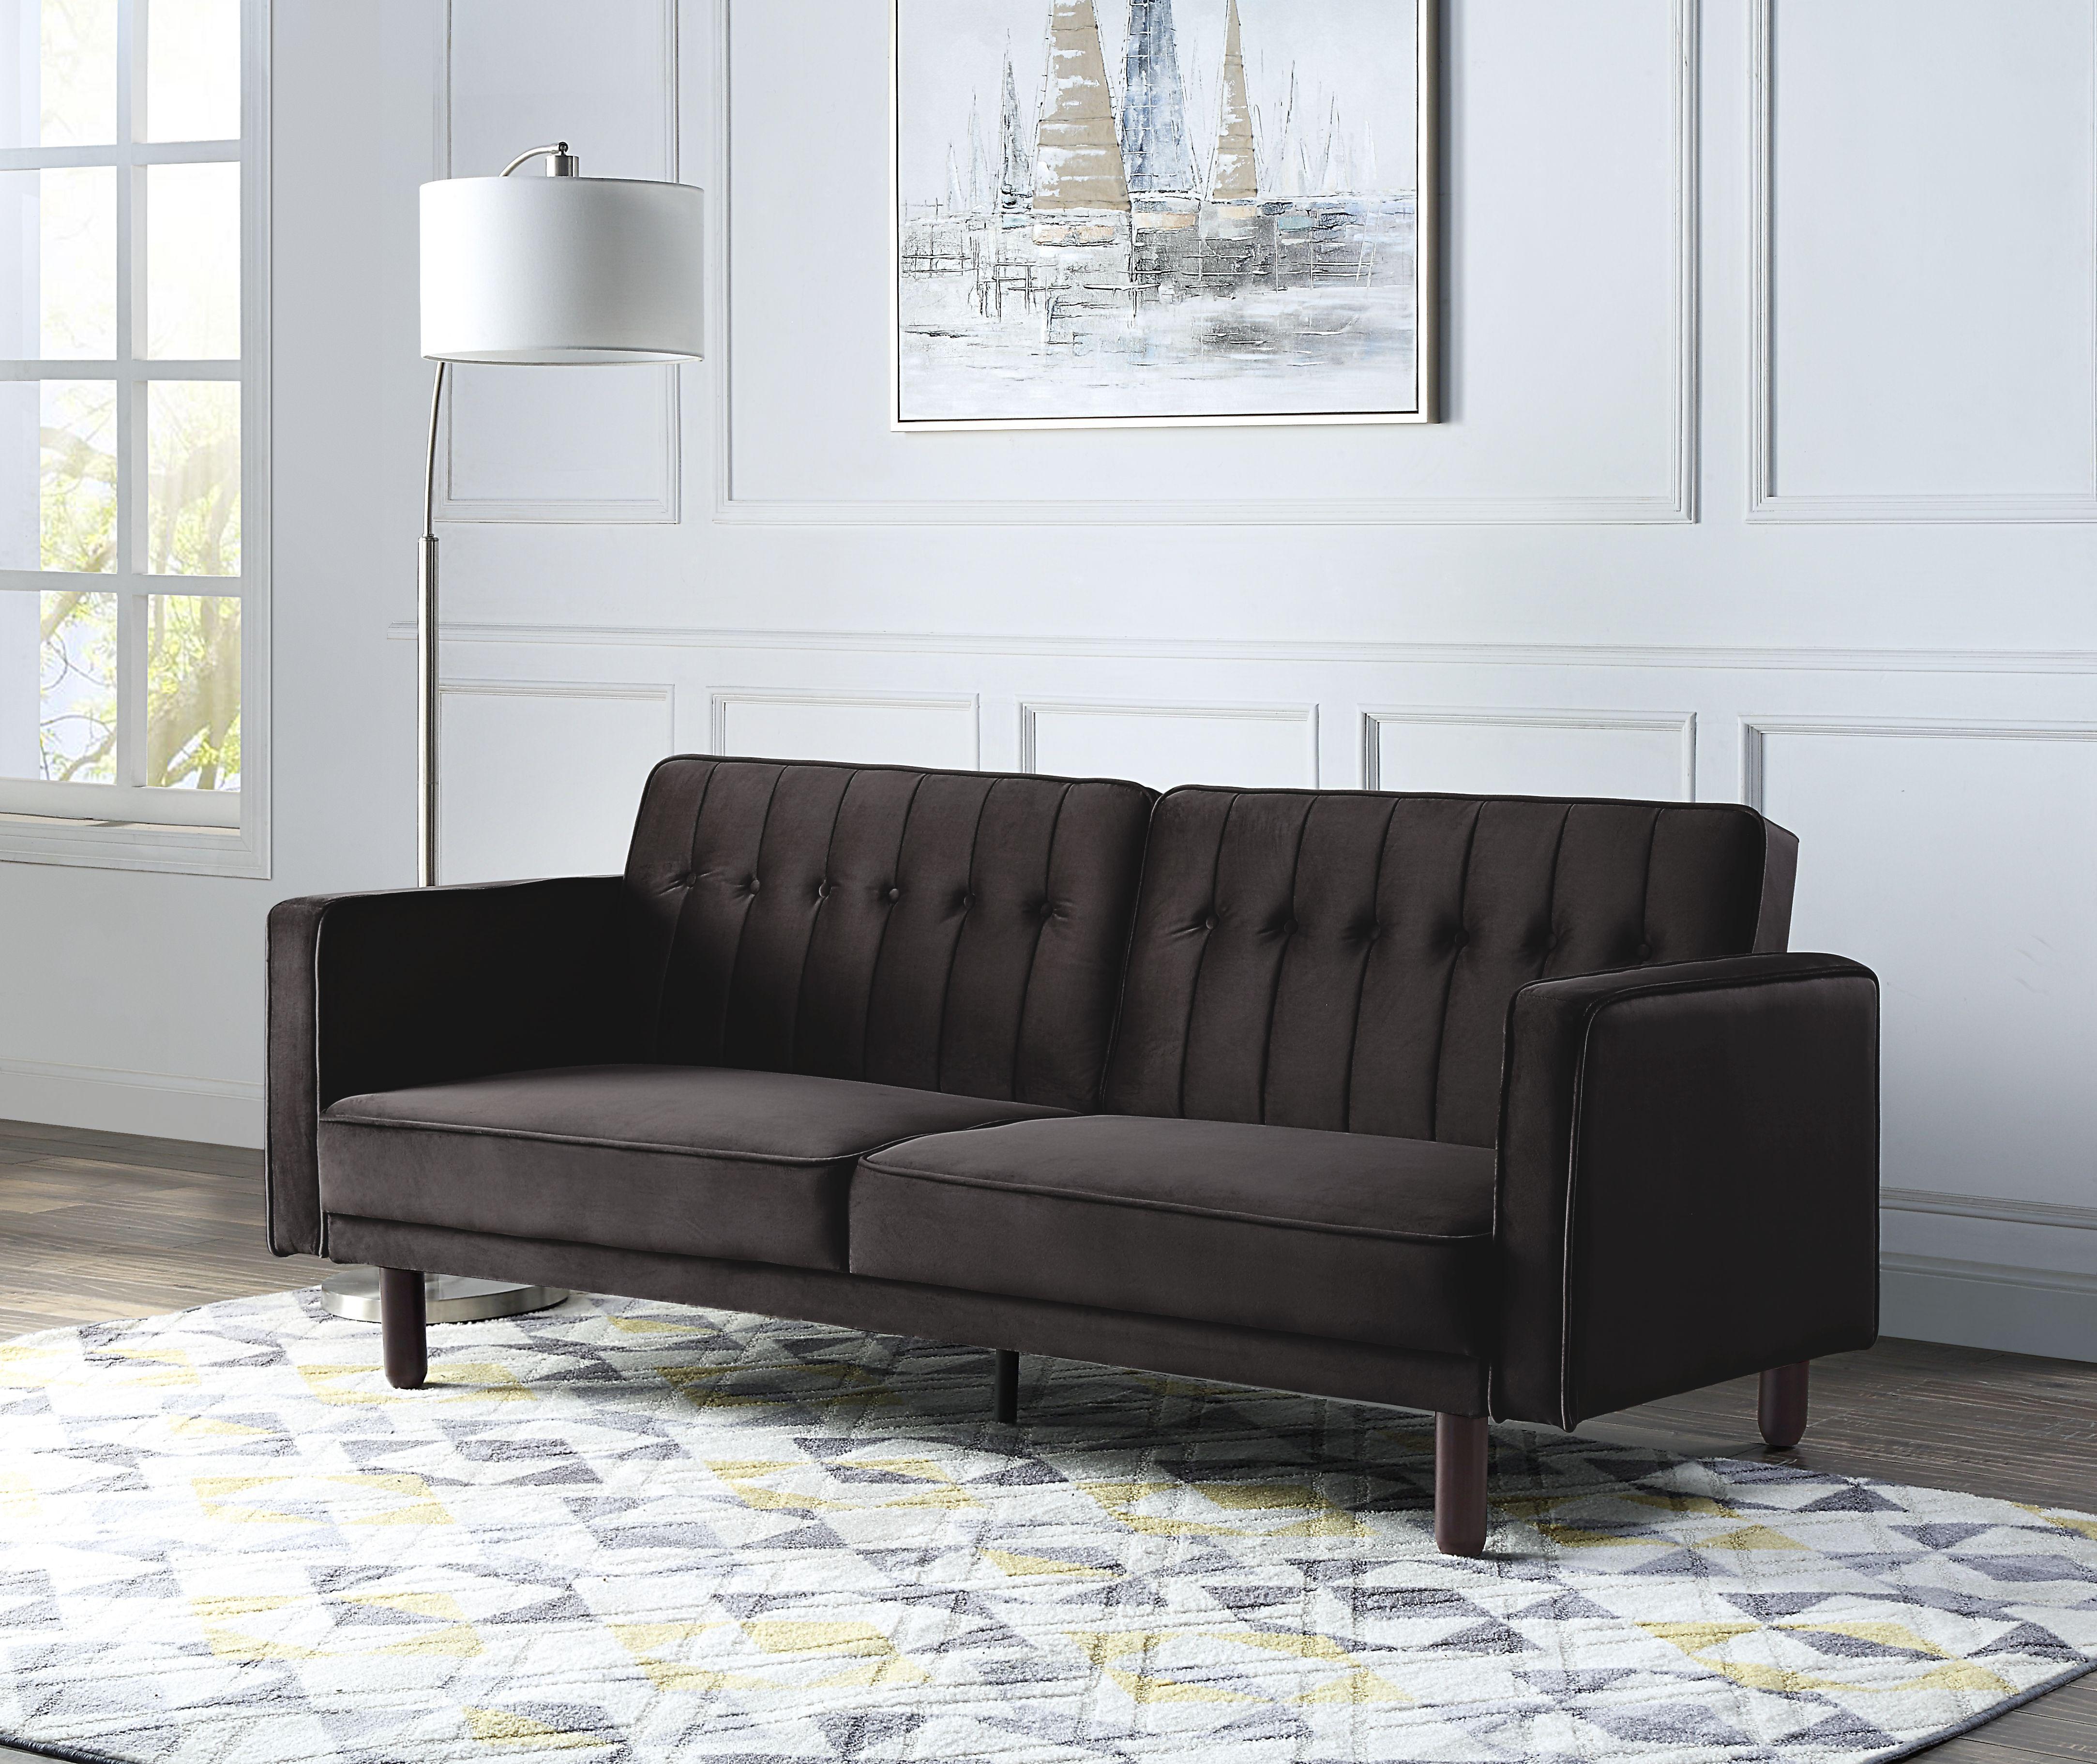 

    
Qinven Futon sofa
